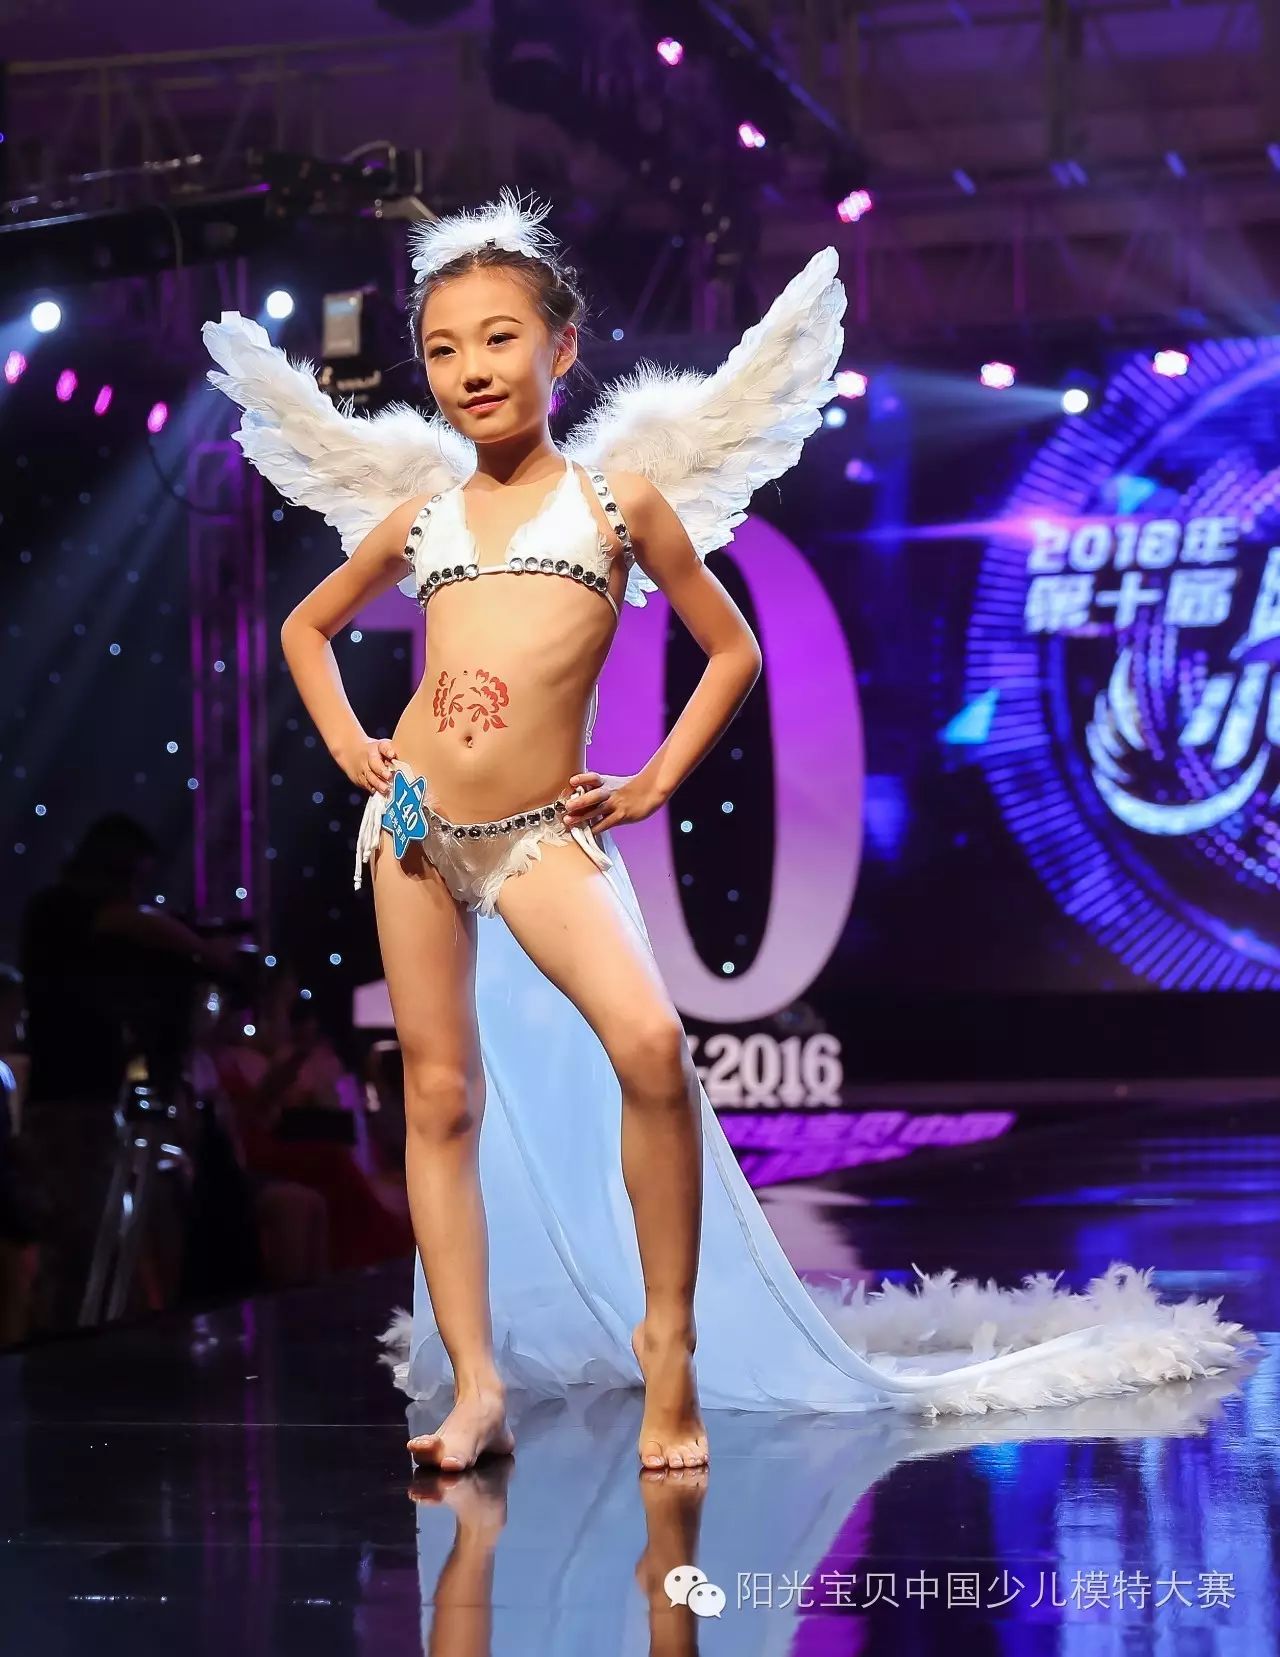 阳光宝贝中国少儿模特大赛 2017上海维密的视频你看了痧?